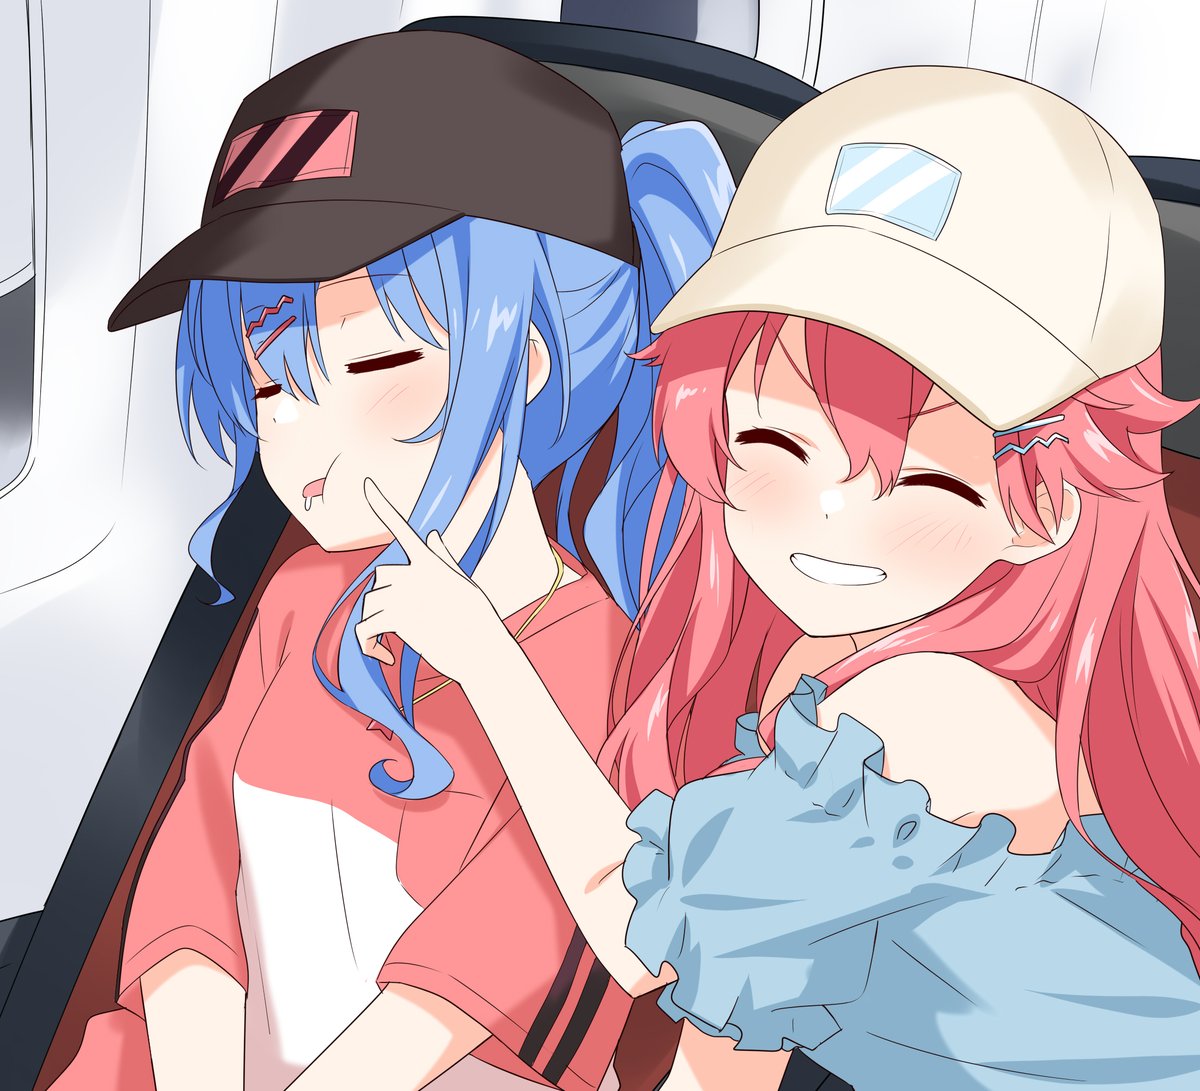 hoshimachi suisei ,sakura miko multiple girls 2girls hat blue hair pink hair baseball cap closed eyes  illustration images